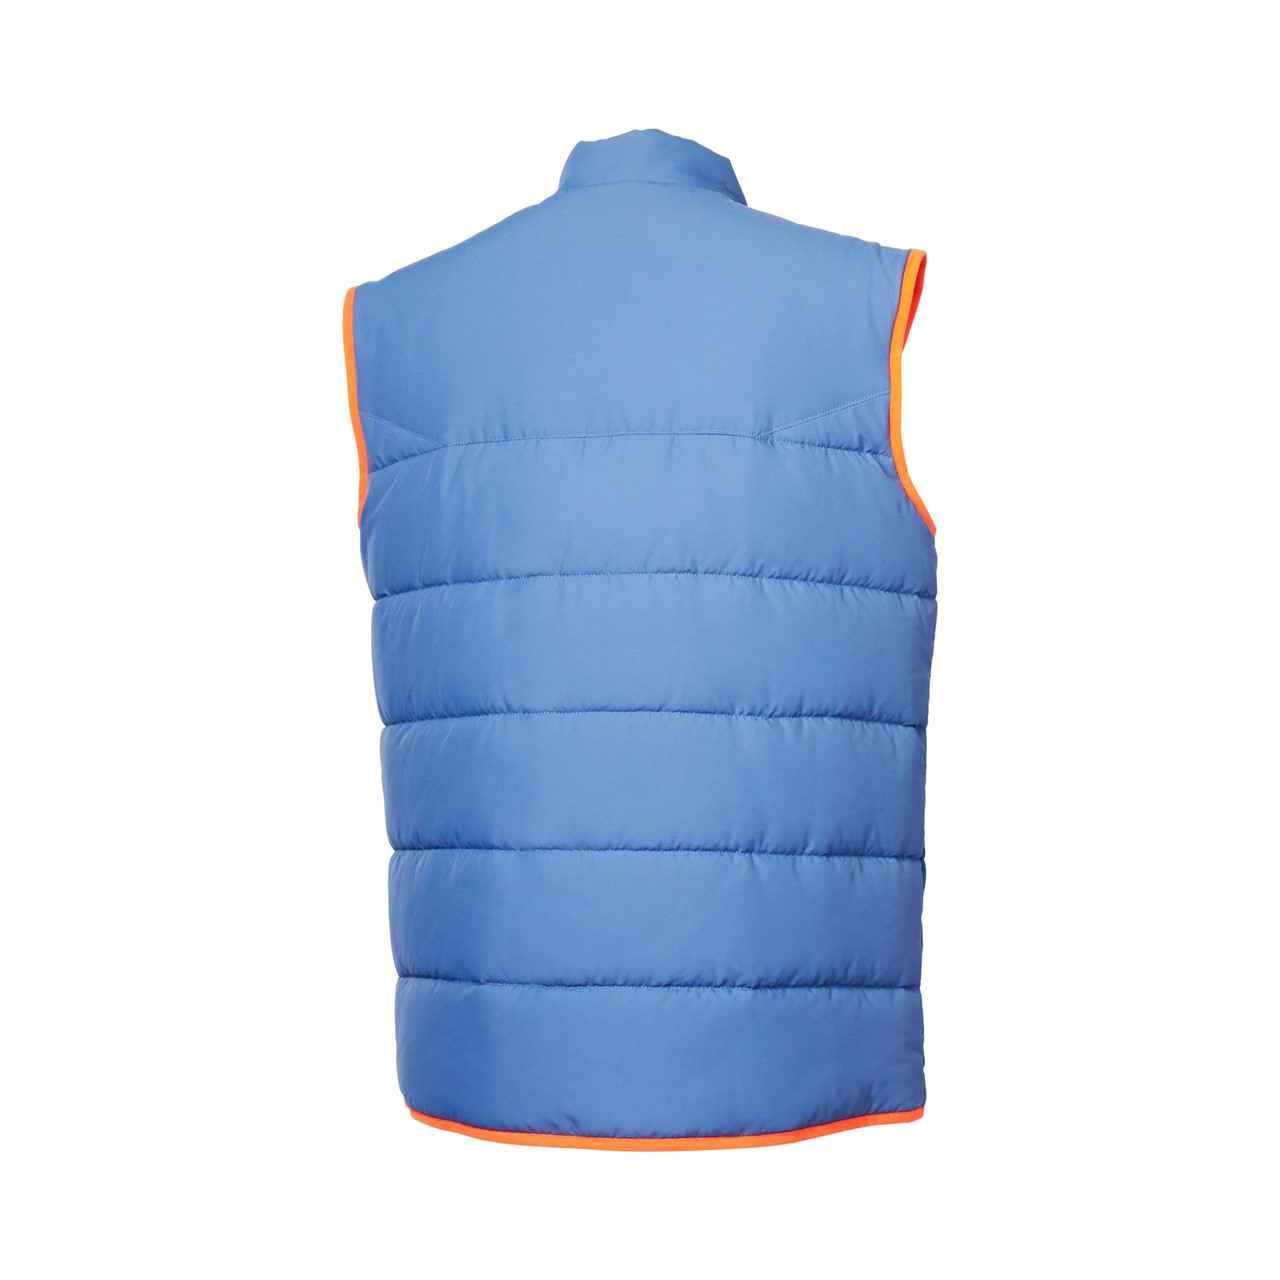 Polaris New OEM Blue/Orange Men's Reversible Windbreak Revolve Vest, 286256612